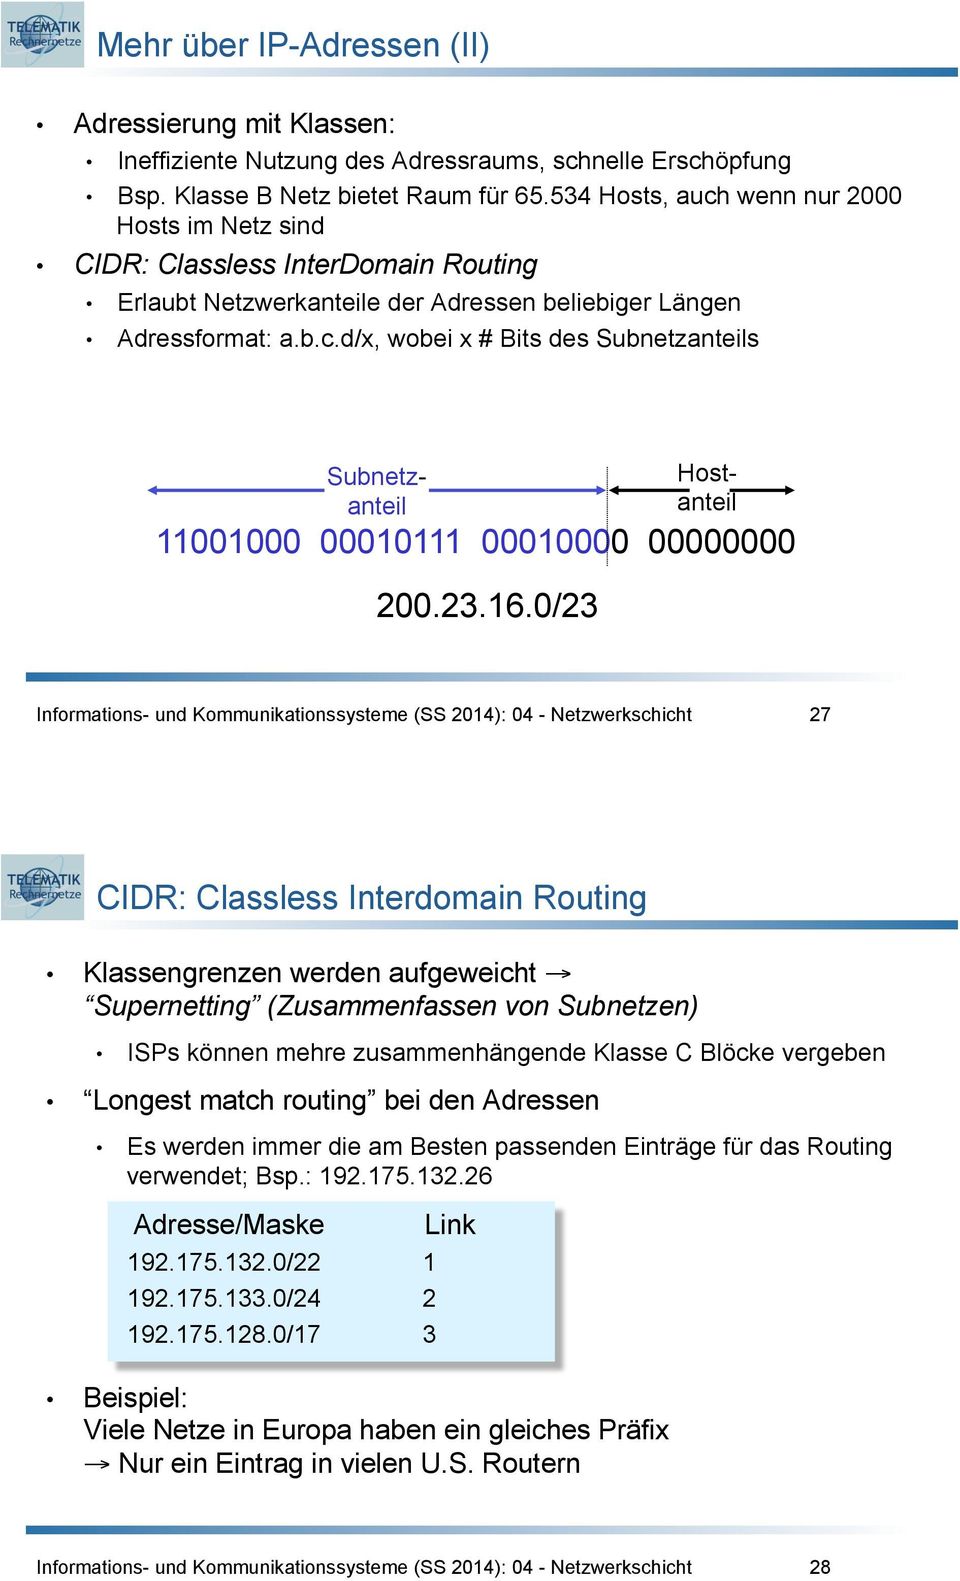 .6.0/ 7 CIDR: Classless Interdomain Routing Klassengrenzen werden aufgeweicht Supernetting (Zusammenfassen von Subnetzen) ISPs können mehre zusammenhängende Klasse C Blöcke vergeben Longest match